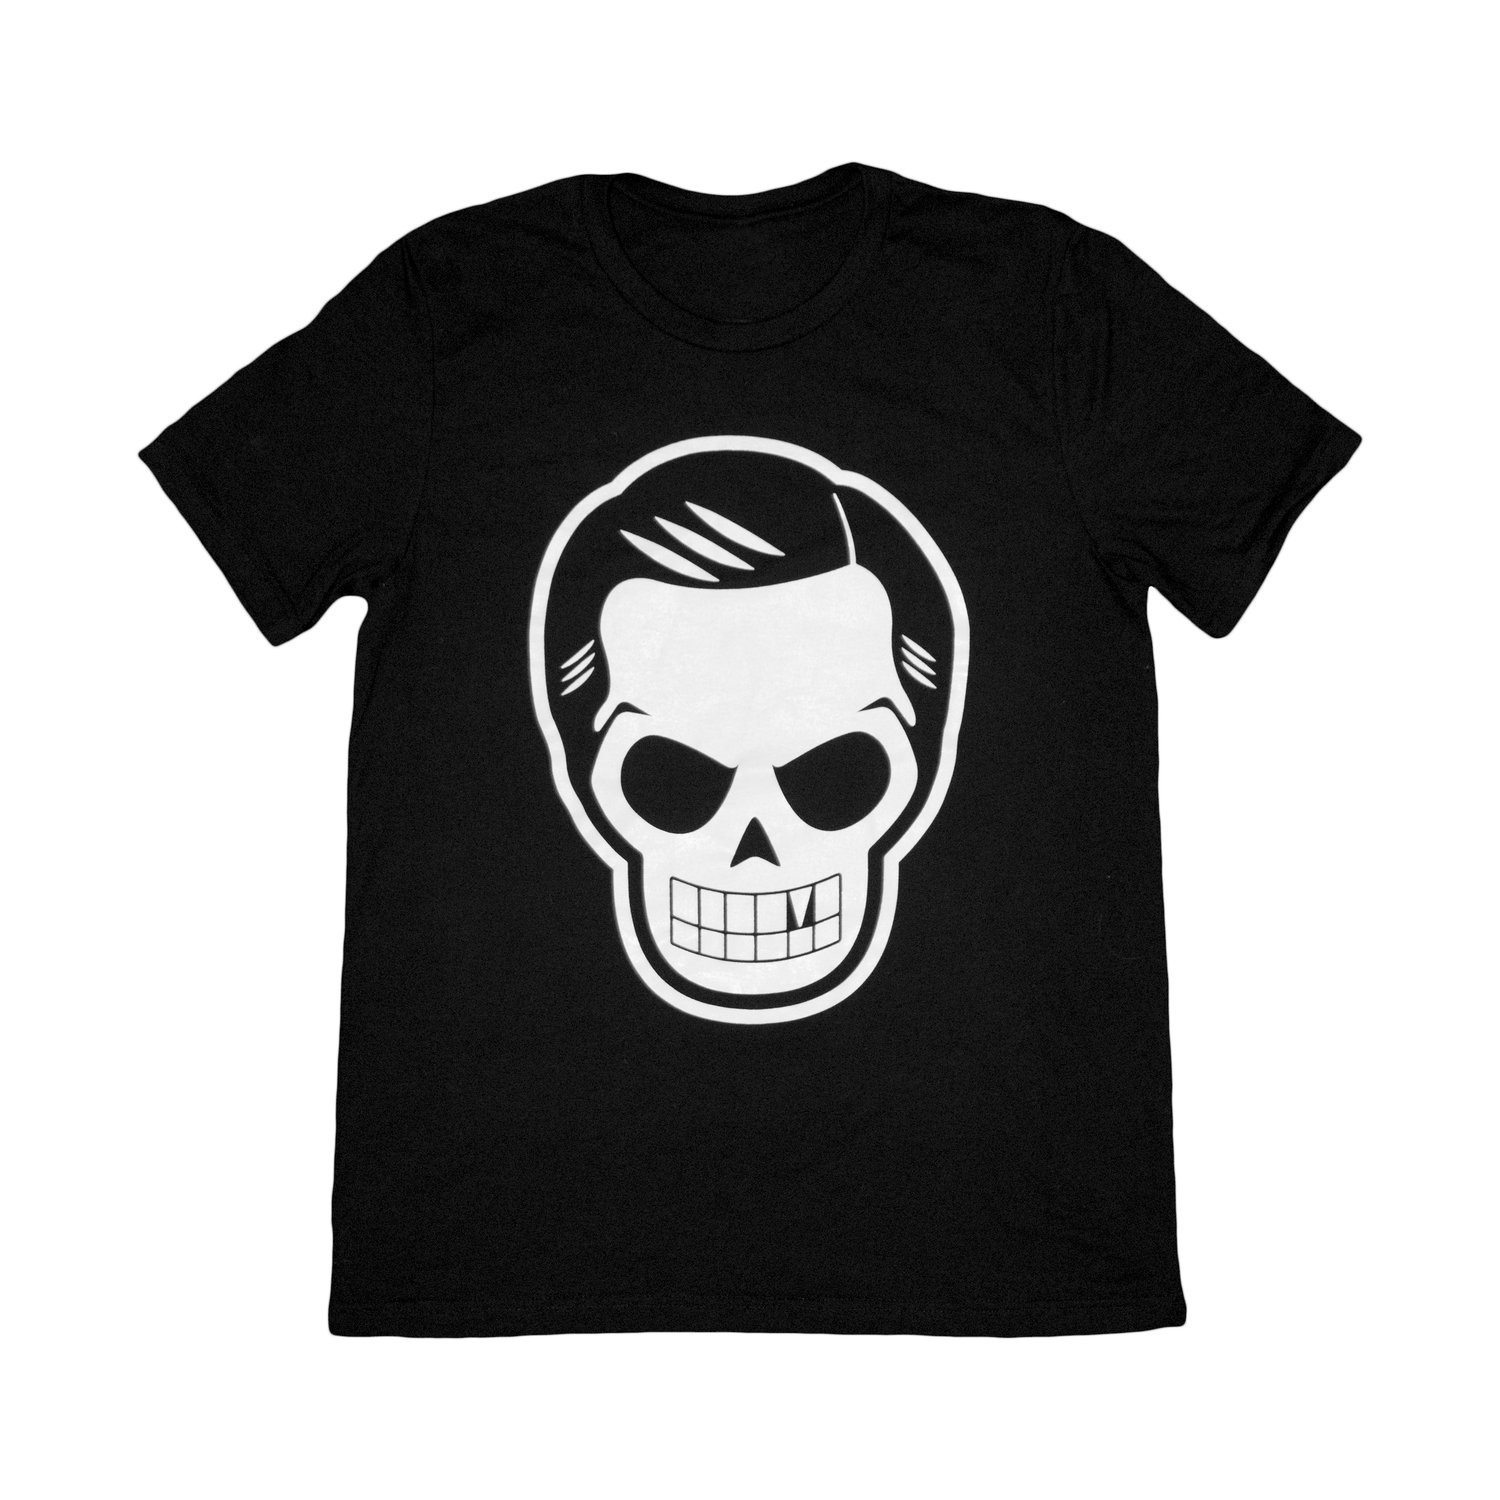 Image of Skull Logo Tee in Black/White